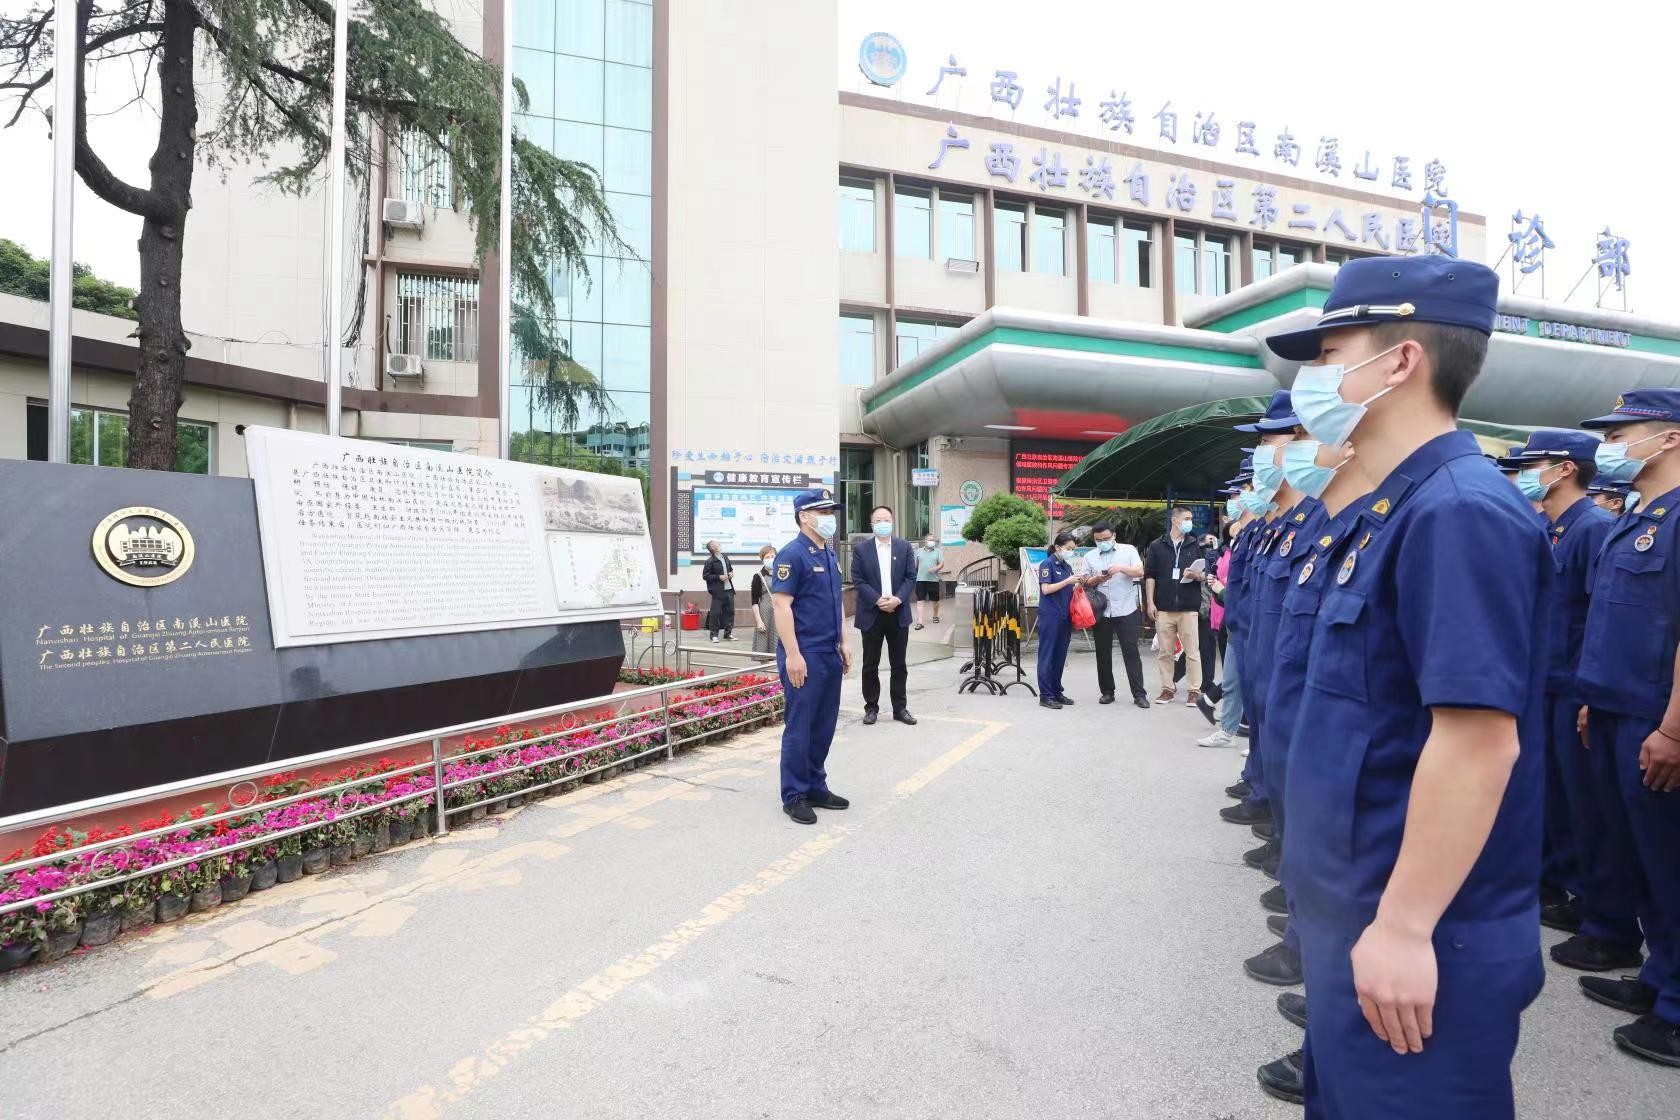 桂林市消防救援支队54名团员青年走进南溪山医院开展“五四”团日主题交流活动